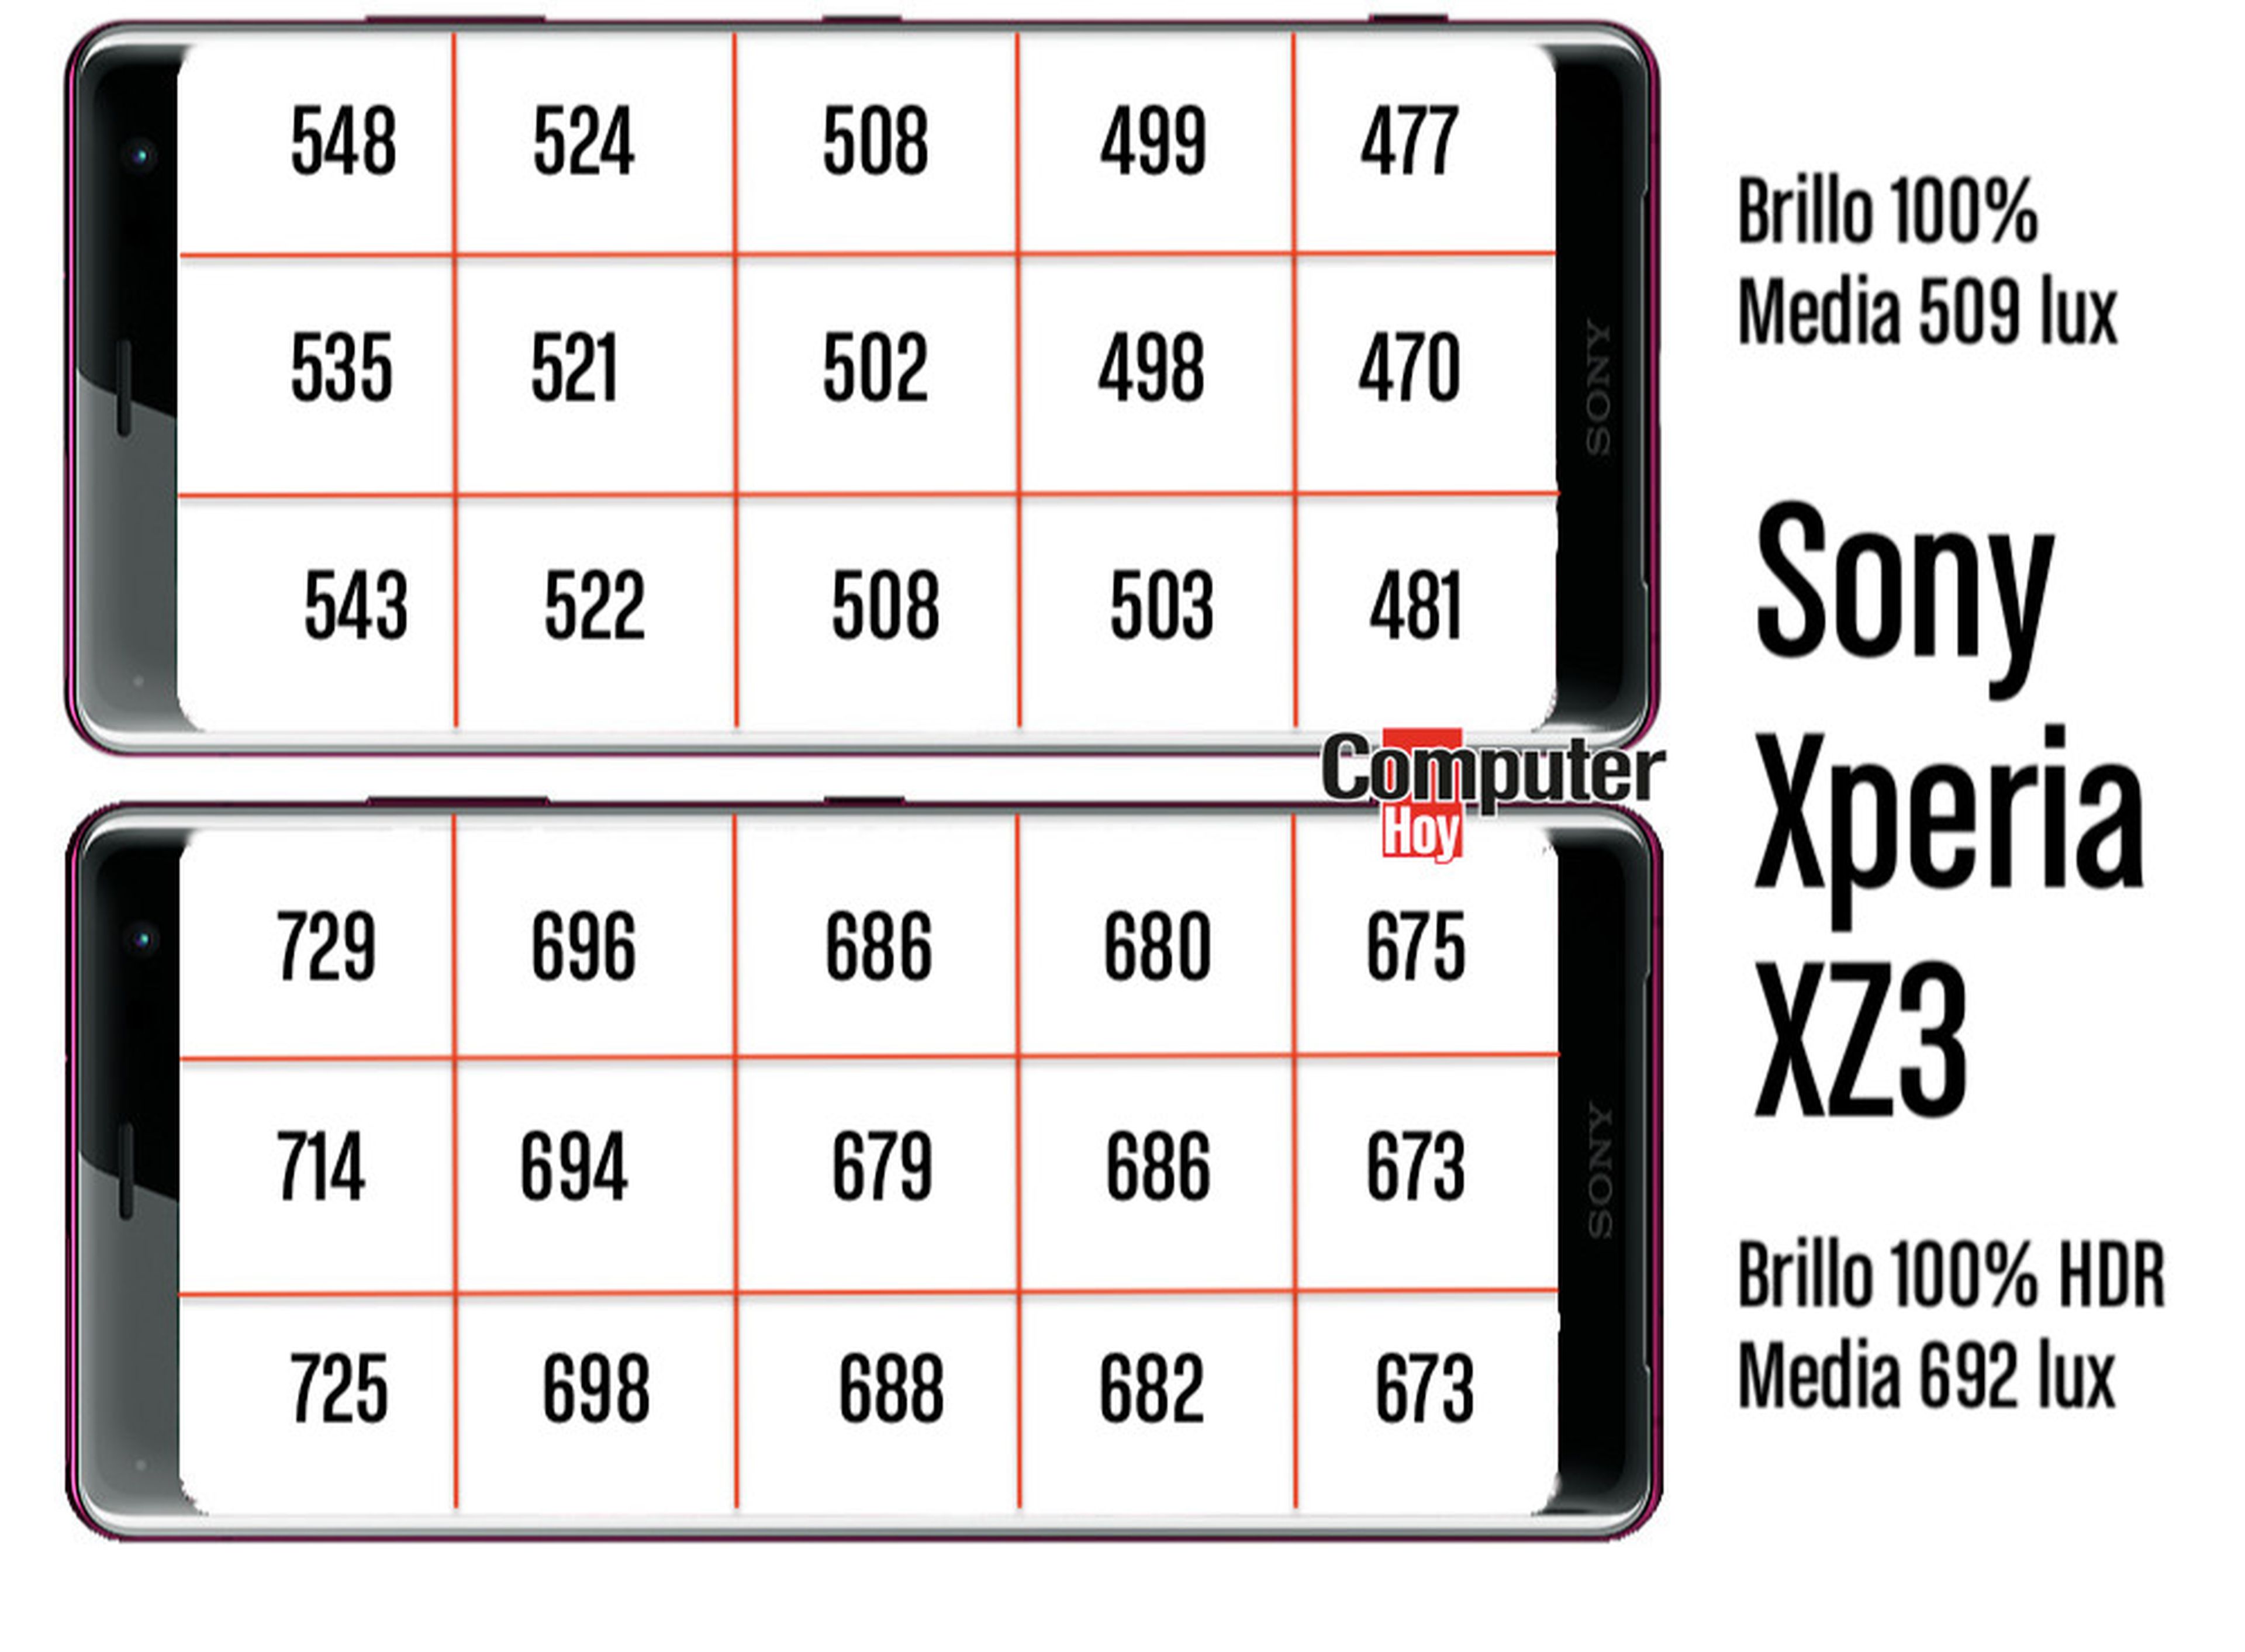 Sony Xperia XZ3 Brillo